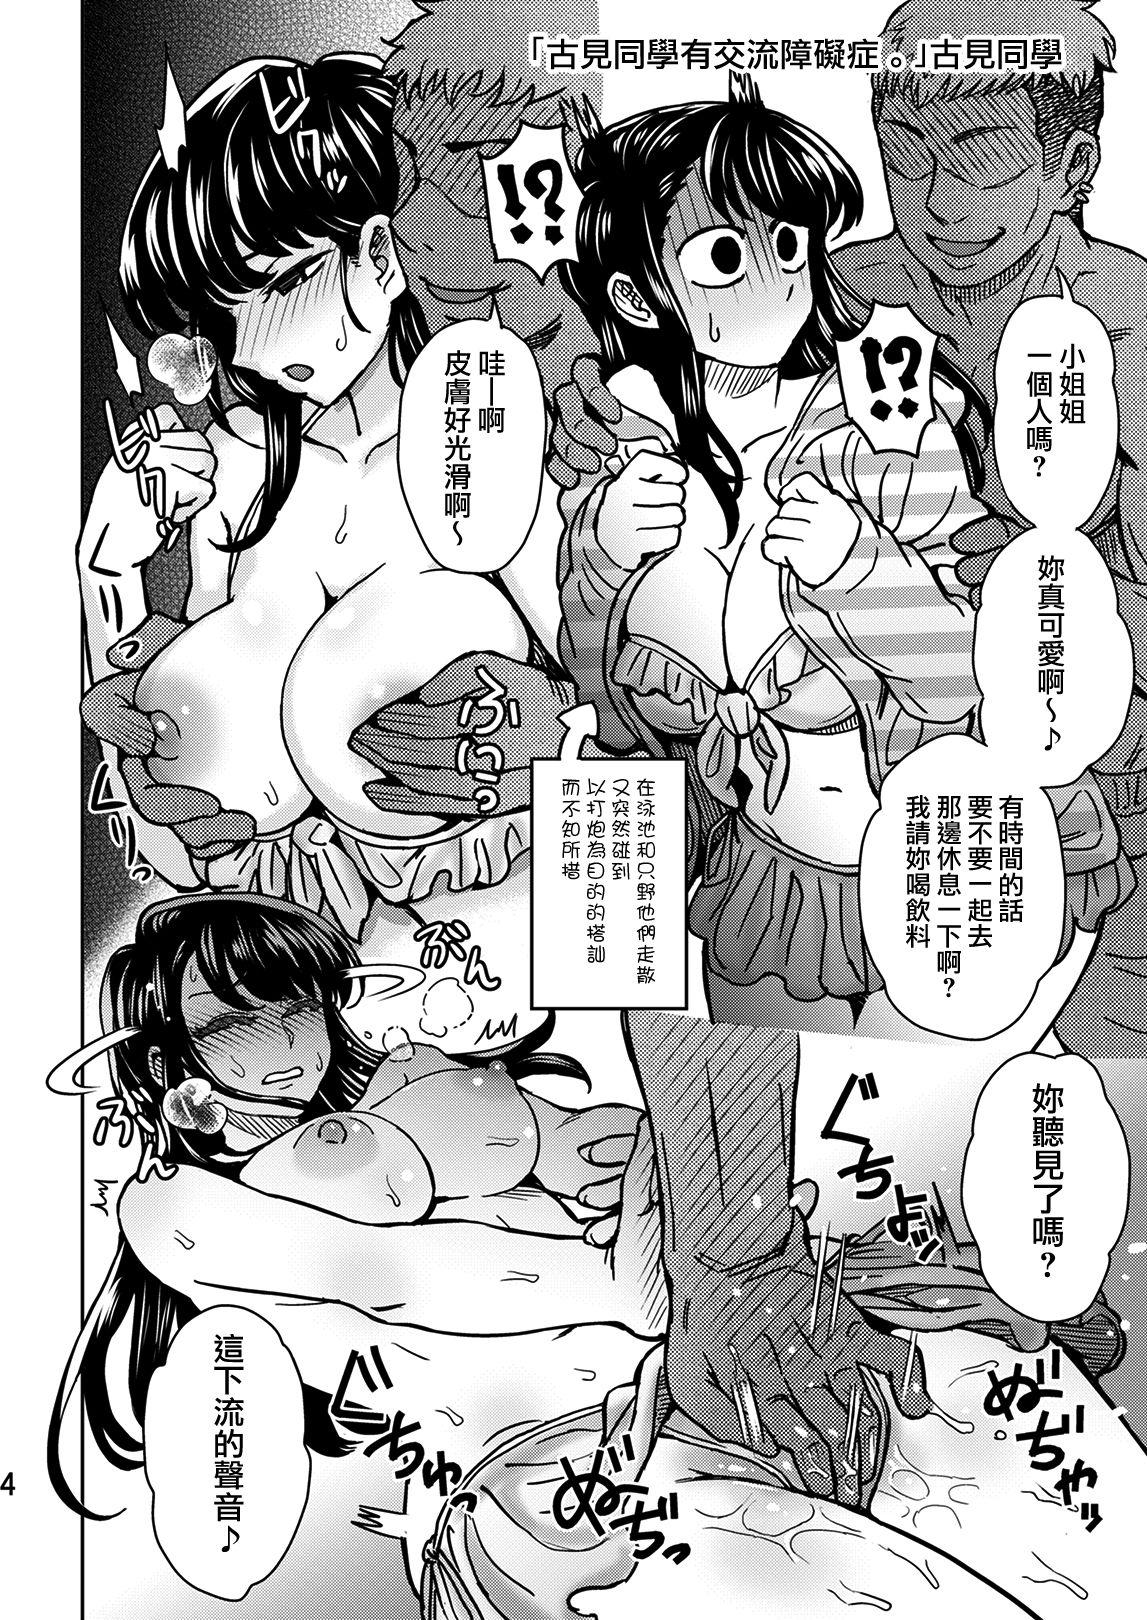 Lez C95 Yorozu NTR Short Manga Shuu - Komi san wa komyushou desu. Sesso - Page 5